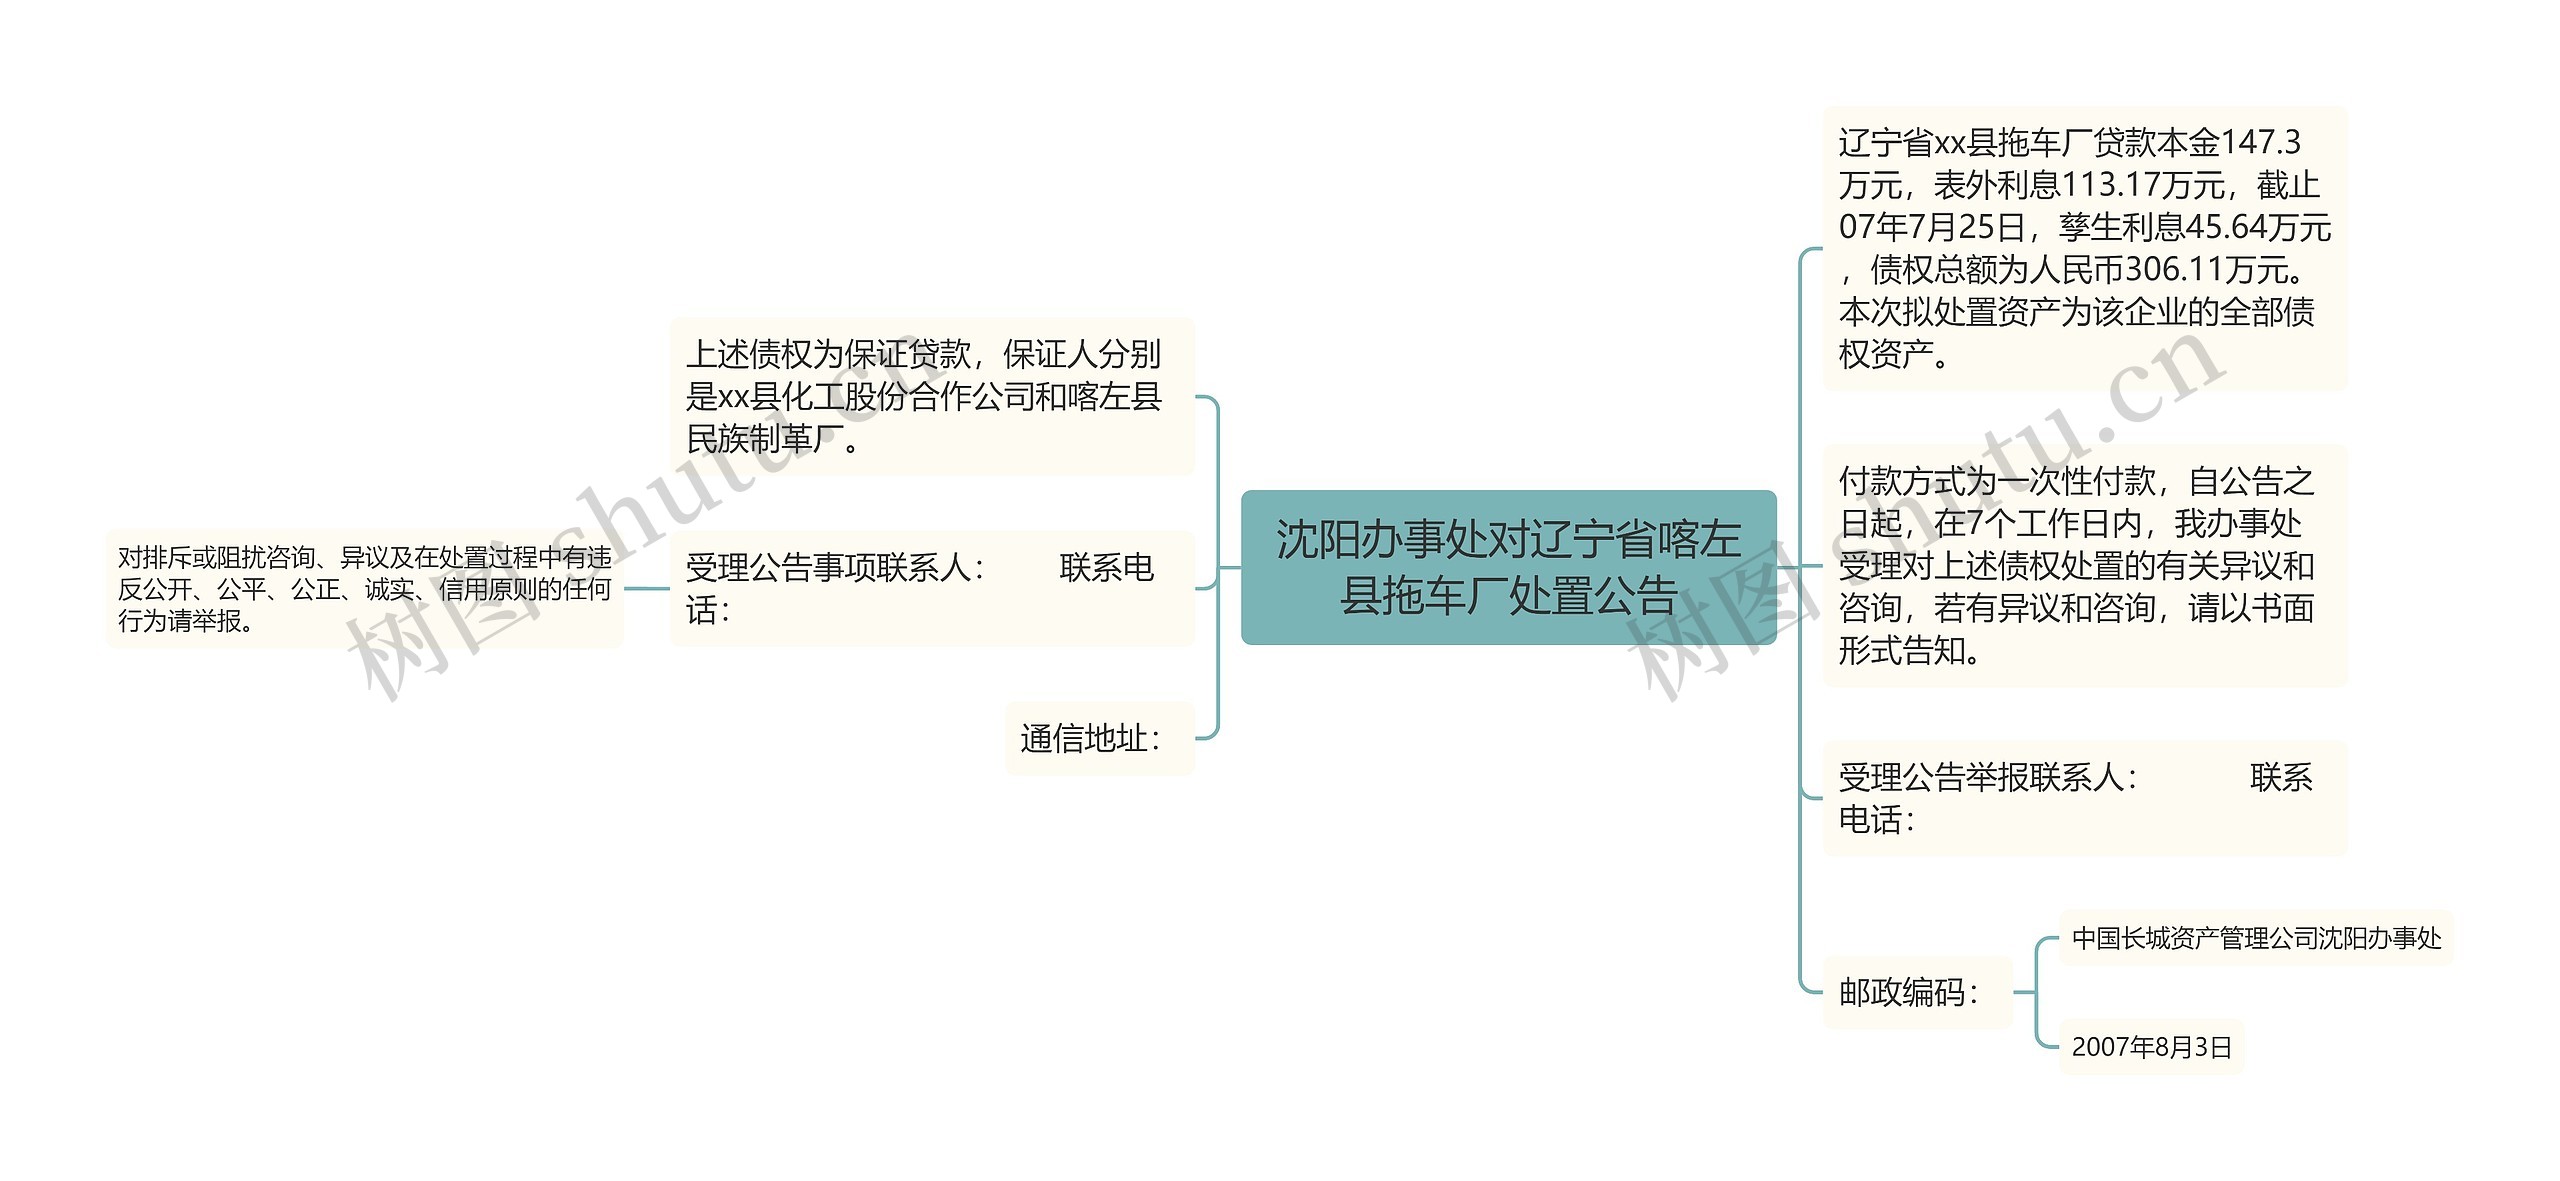 沈阳办事处对辽宁省喀左县拖车厂处置公告思维导图